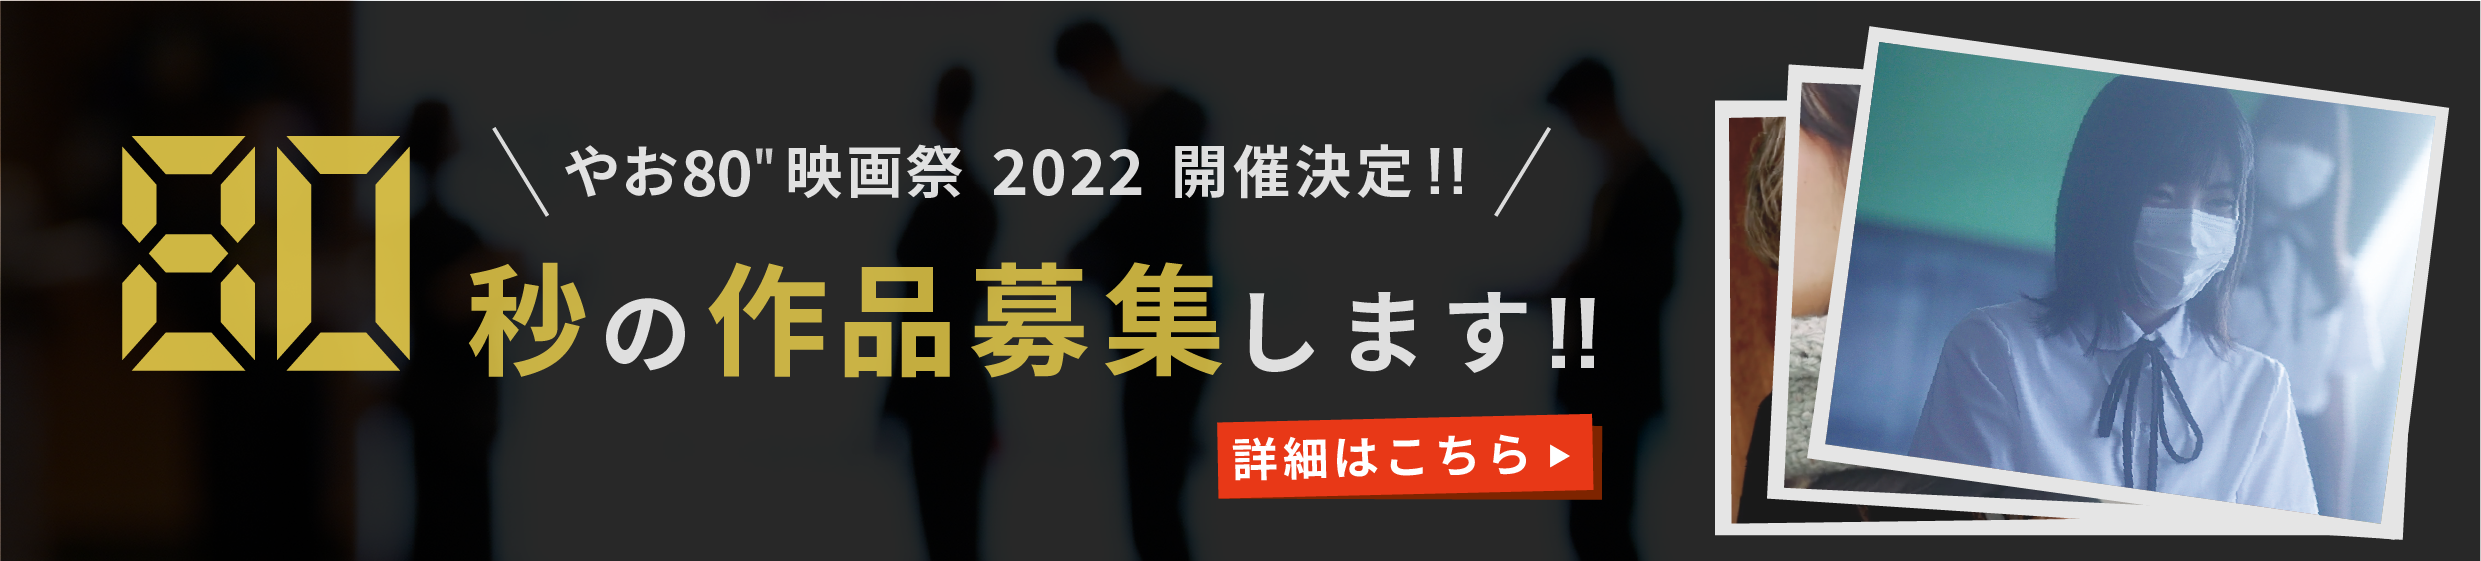 やお80’映画祭 2022 開催決定!!80秒の作品大募集!!